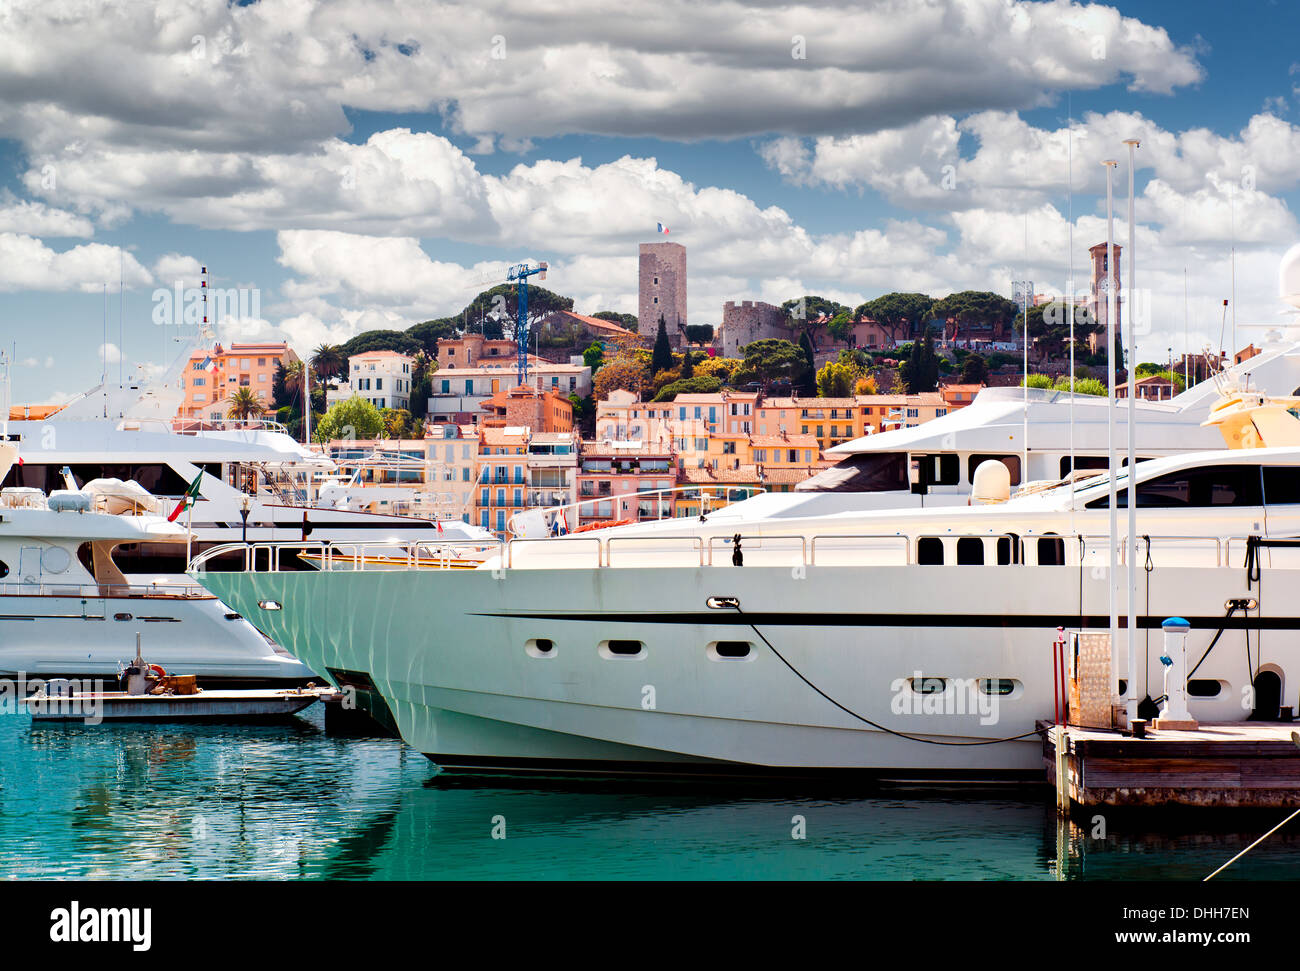 Le Suquet. Cannes, France Stock Photo